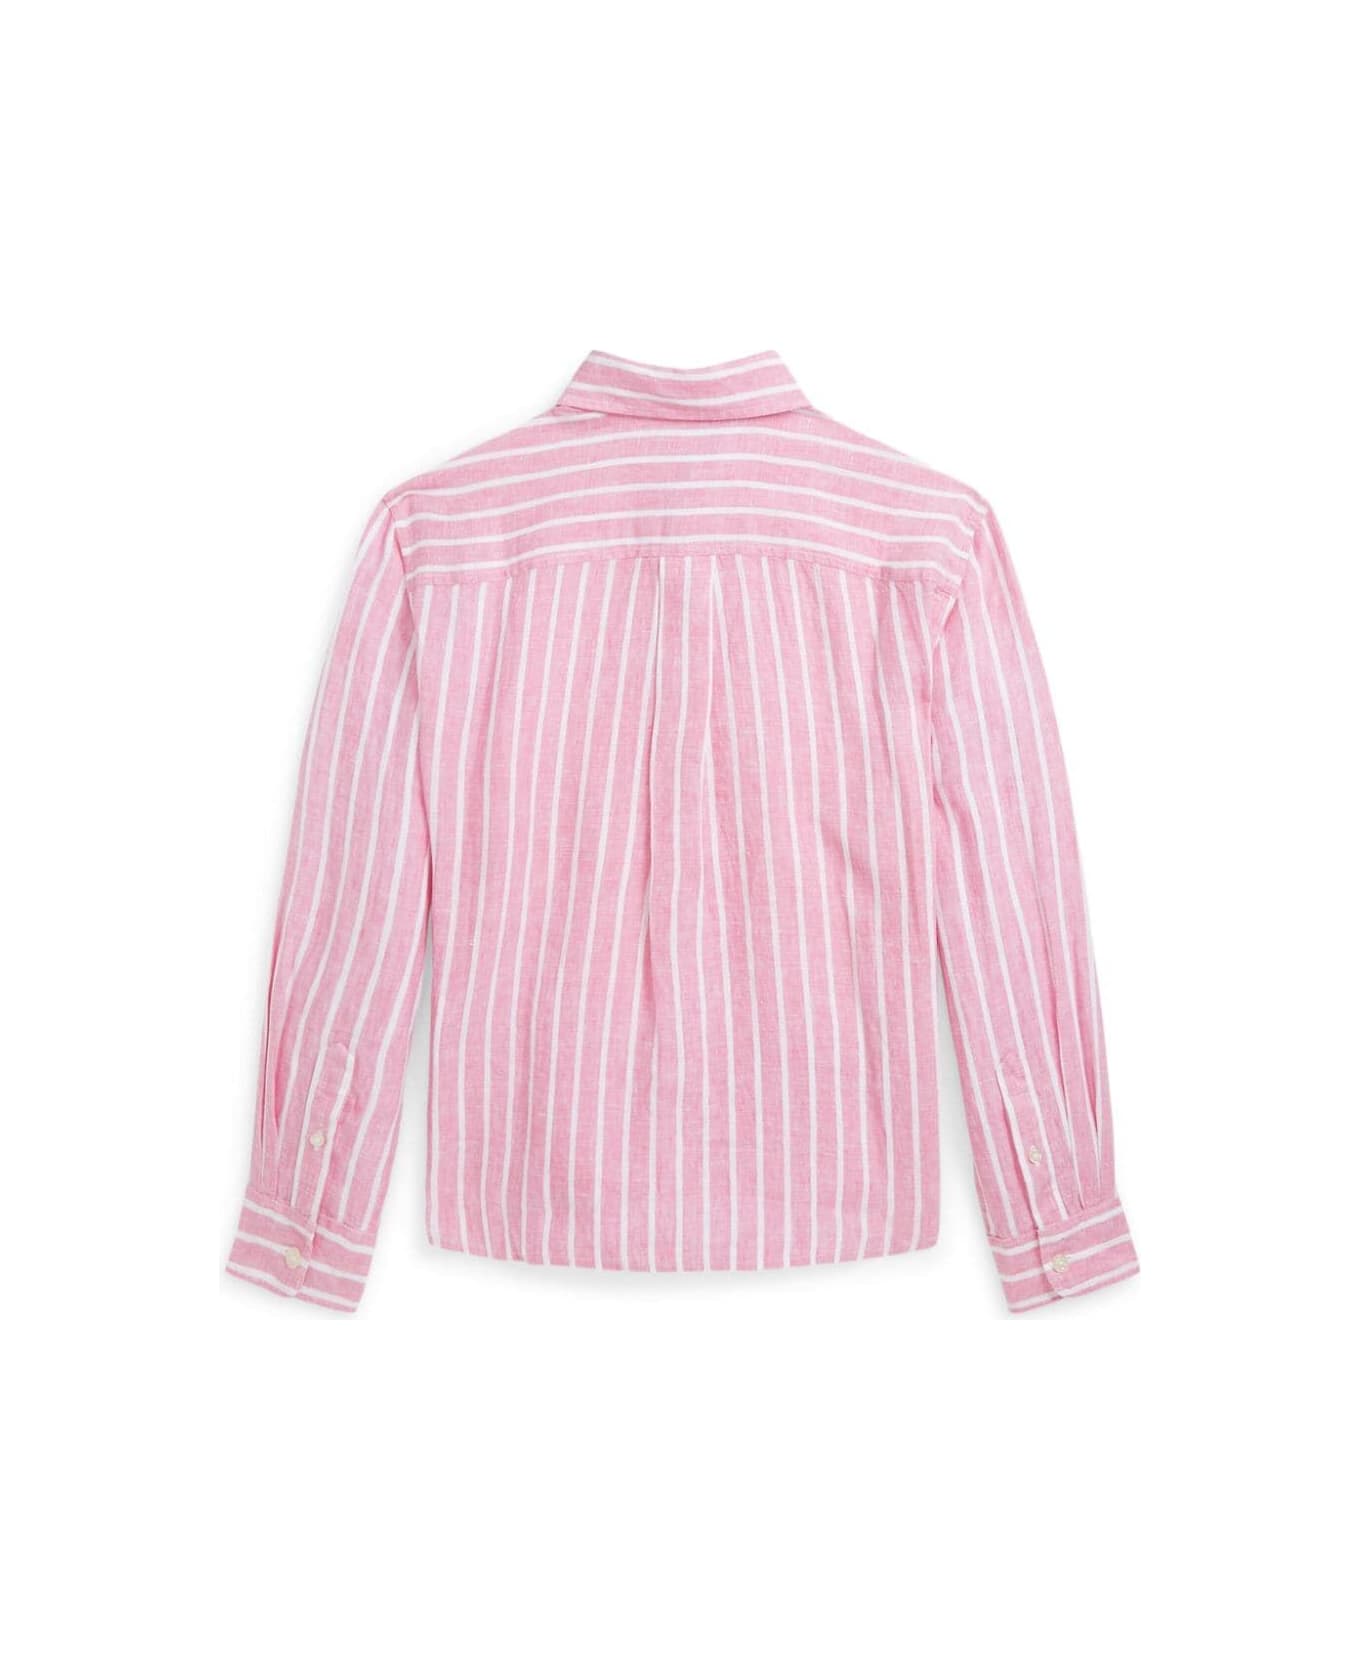 Polo Ralph Lauren Lismoreshirt Shirts Button Front Shirt - Pink White